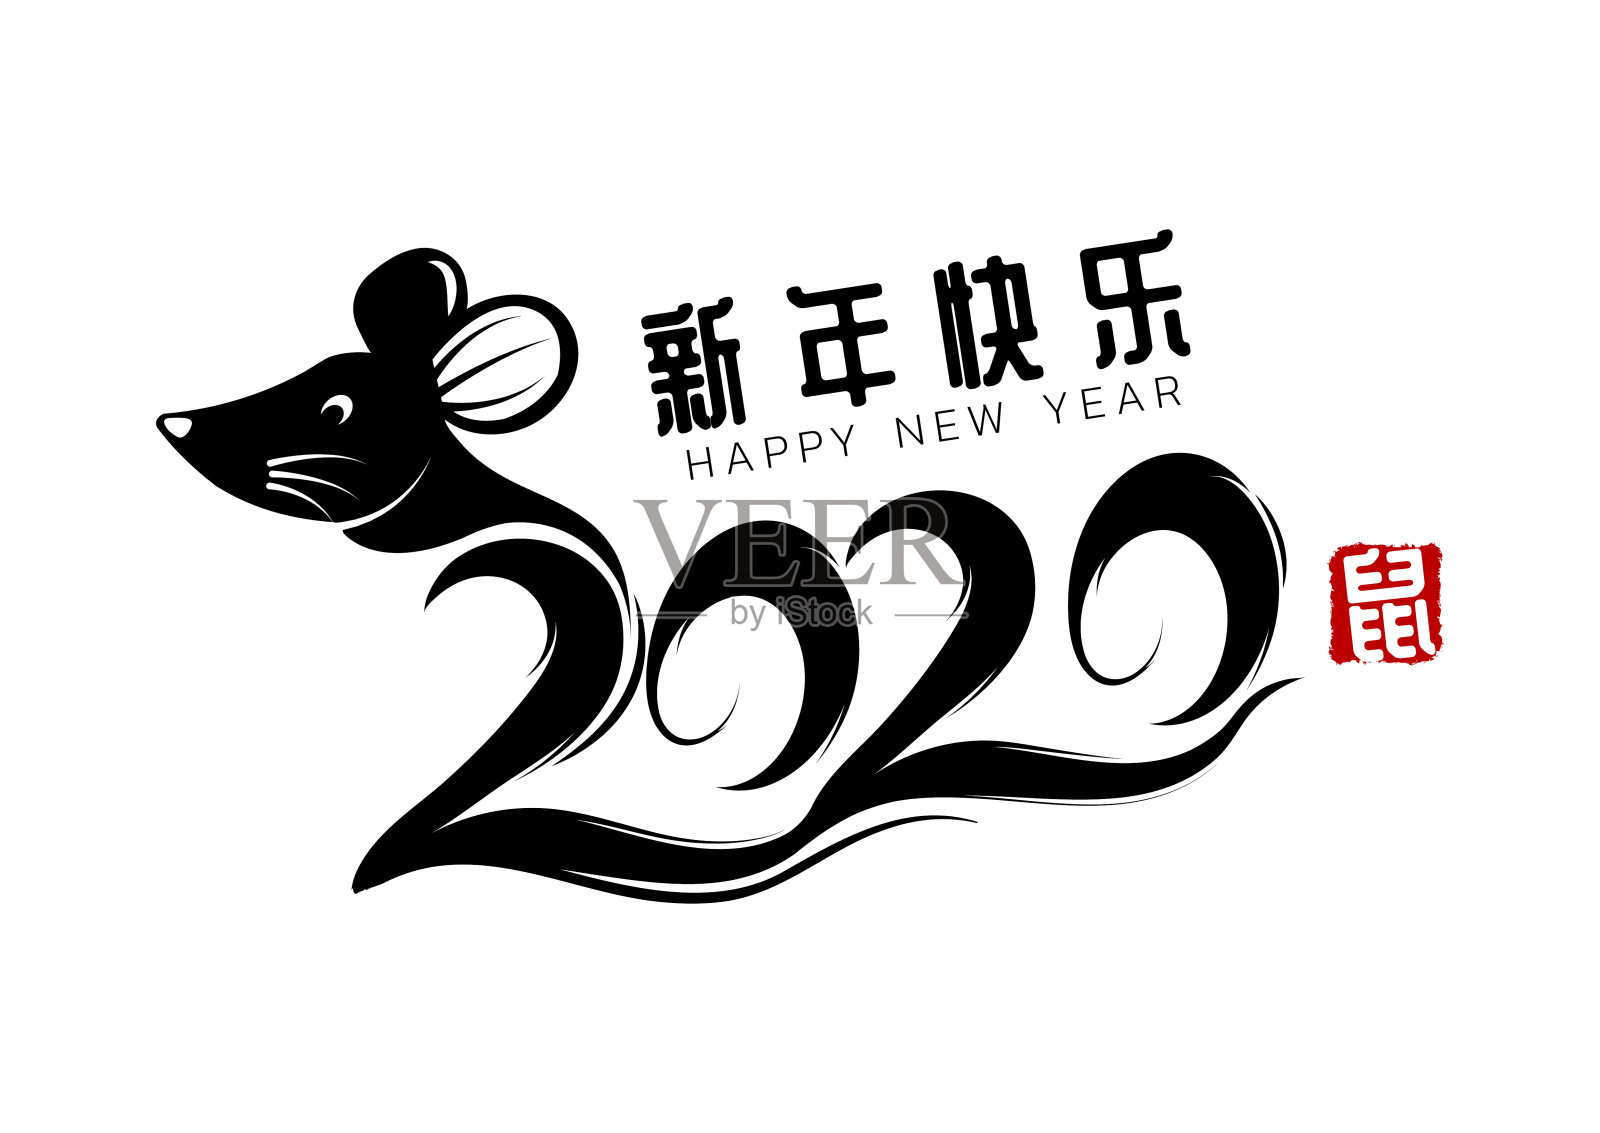 农历鼠年。2020年中国新年。汉字意味着新年快乐。书法和鼠标。贺卡、请帖、海报、横幅、日历等十二生肖标志插画图片素材